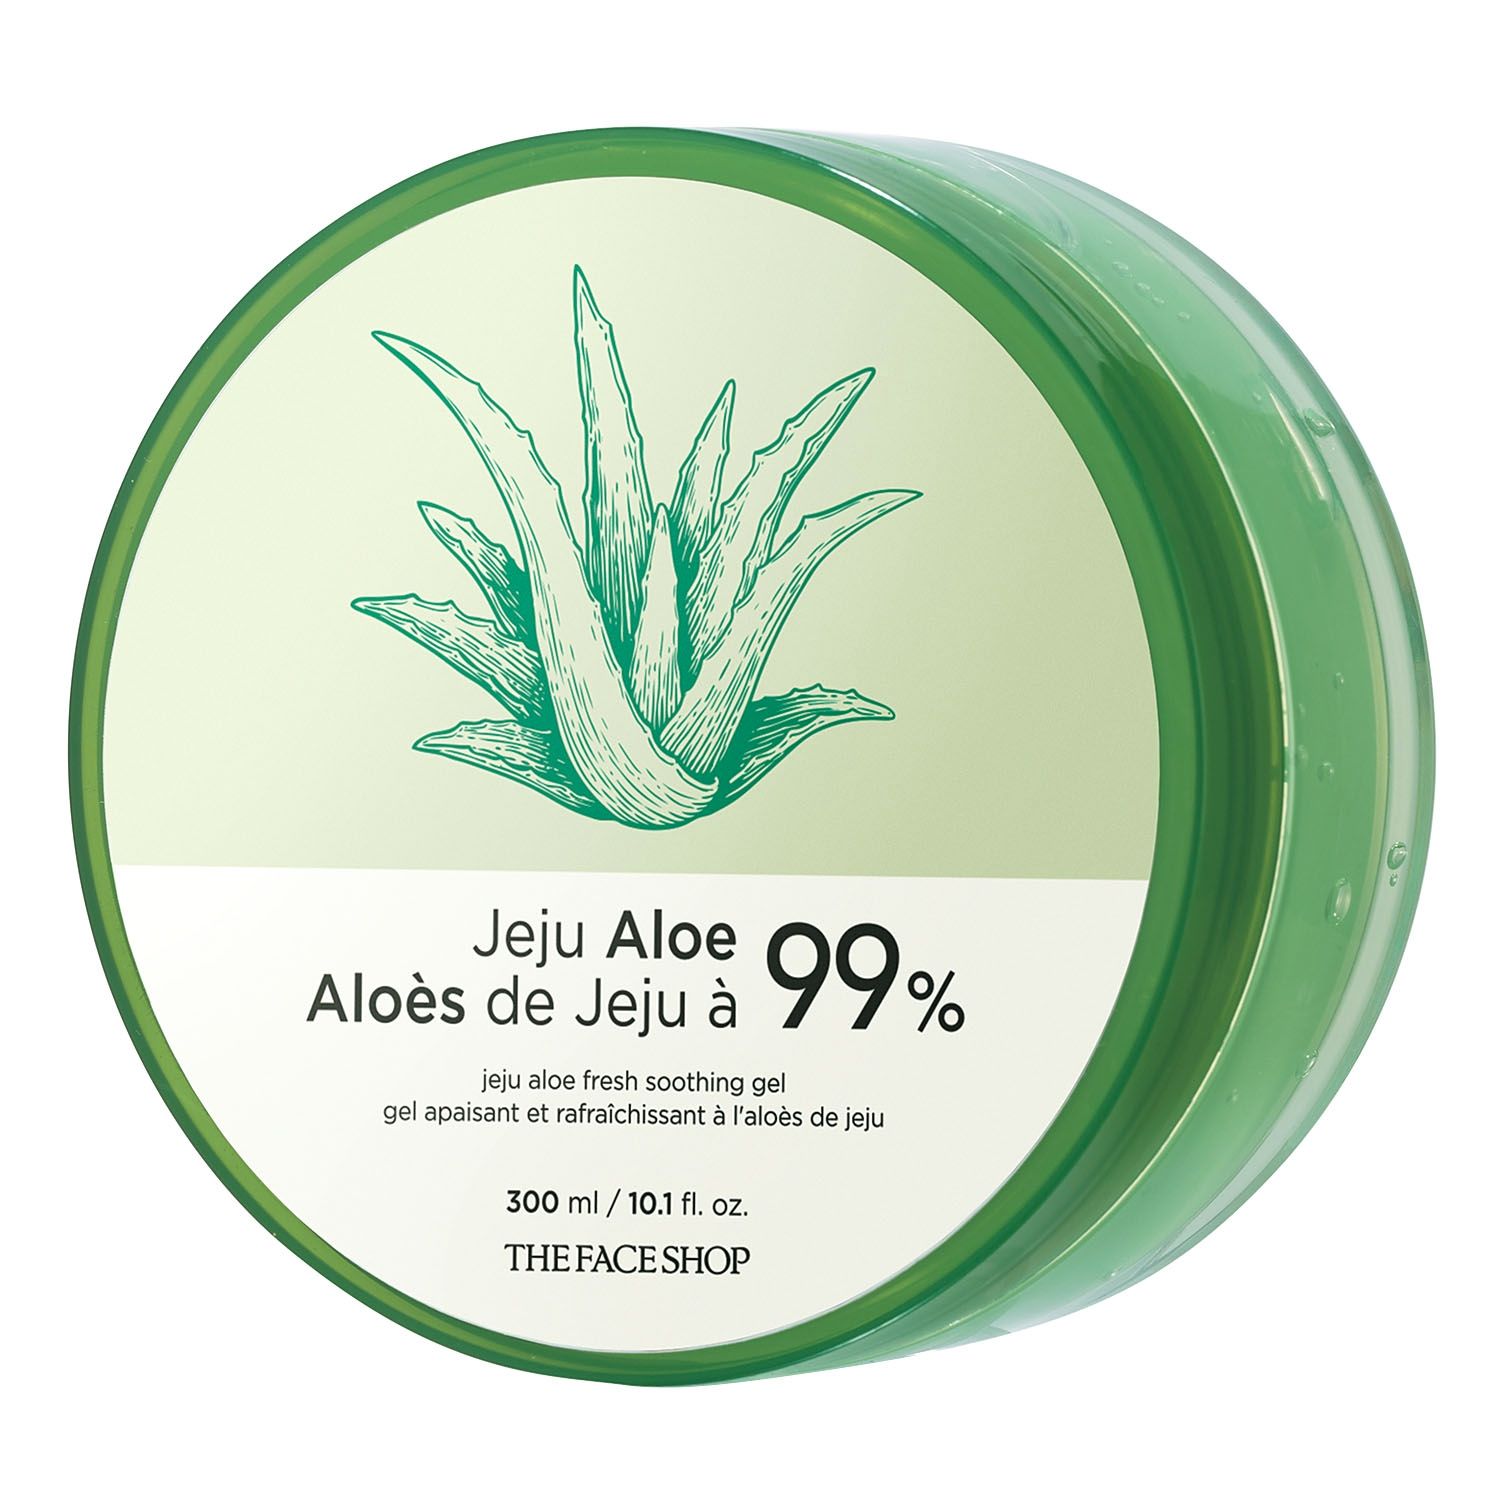 Prestatie acre diepvries Jeju Aloe 99% Fresh Soothing Gel by Avon